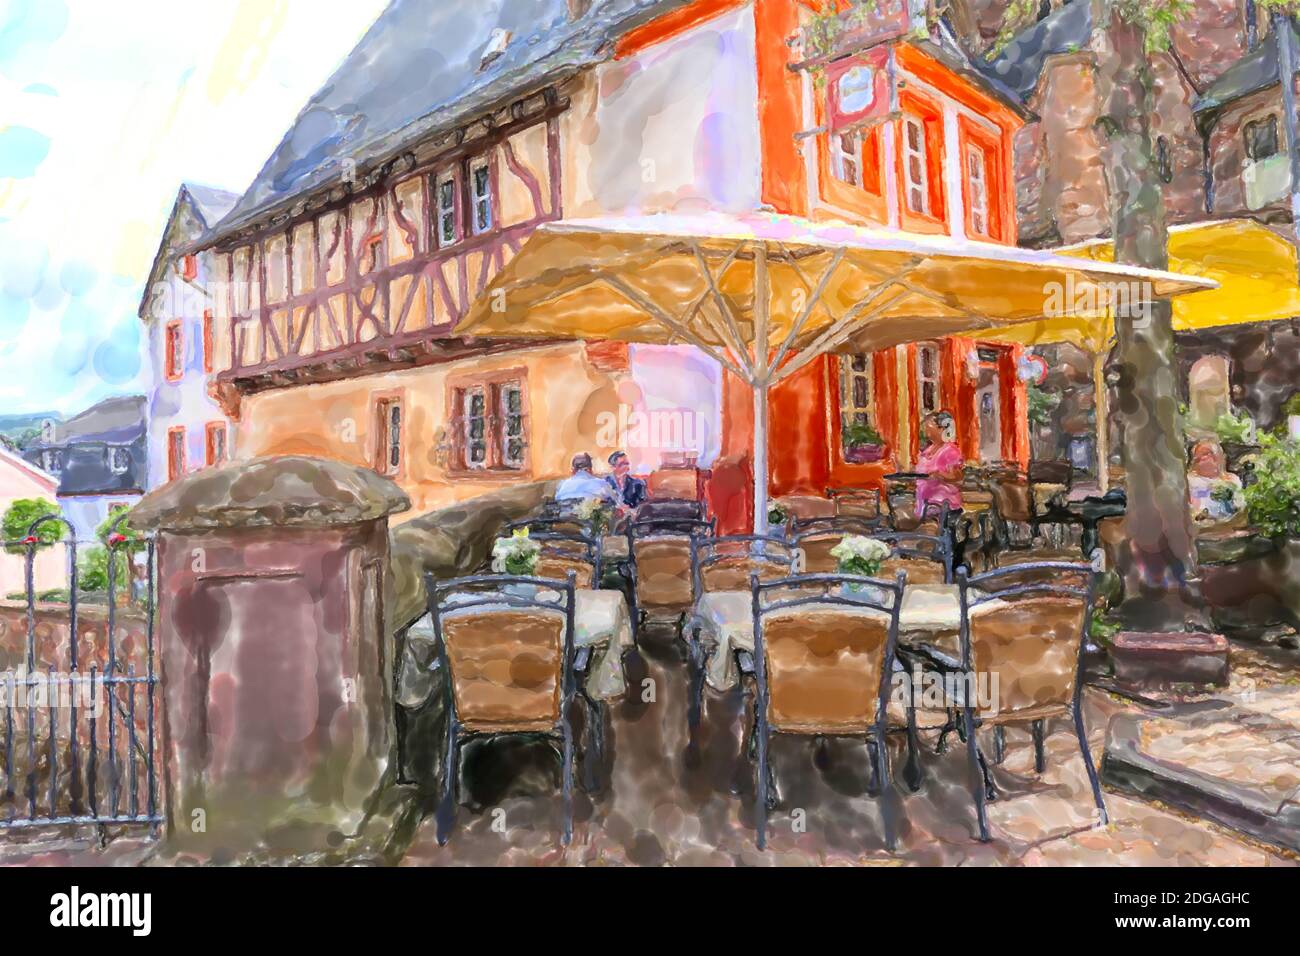 Illustration aquarelle du paysage urbain de la Sarre en Rhénanie-Palatinat. Allemagne. Bars et restaurants le long du ruisseau Leukbach. Banque D'Images